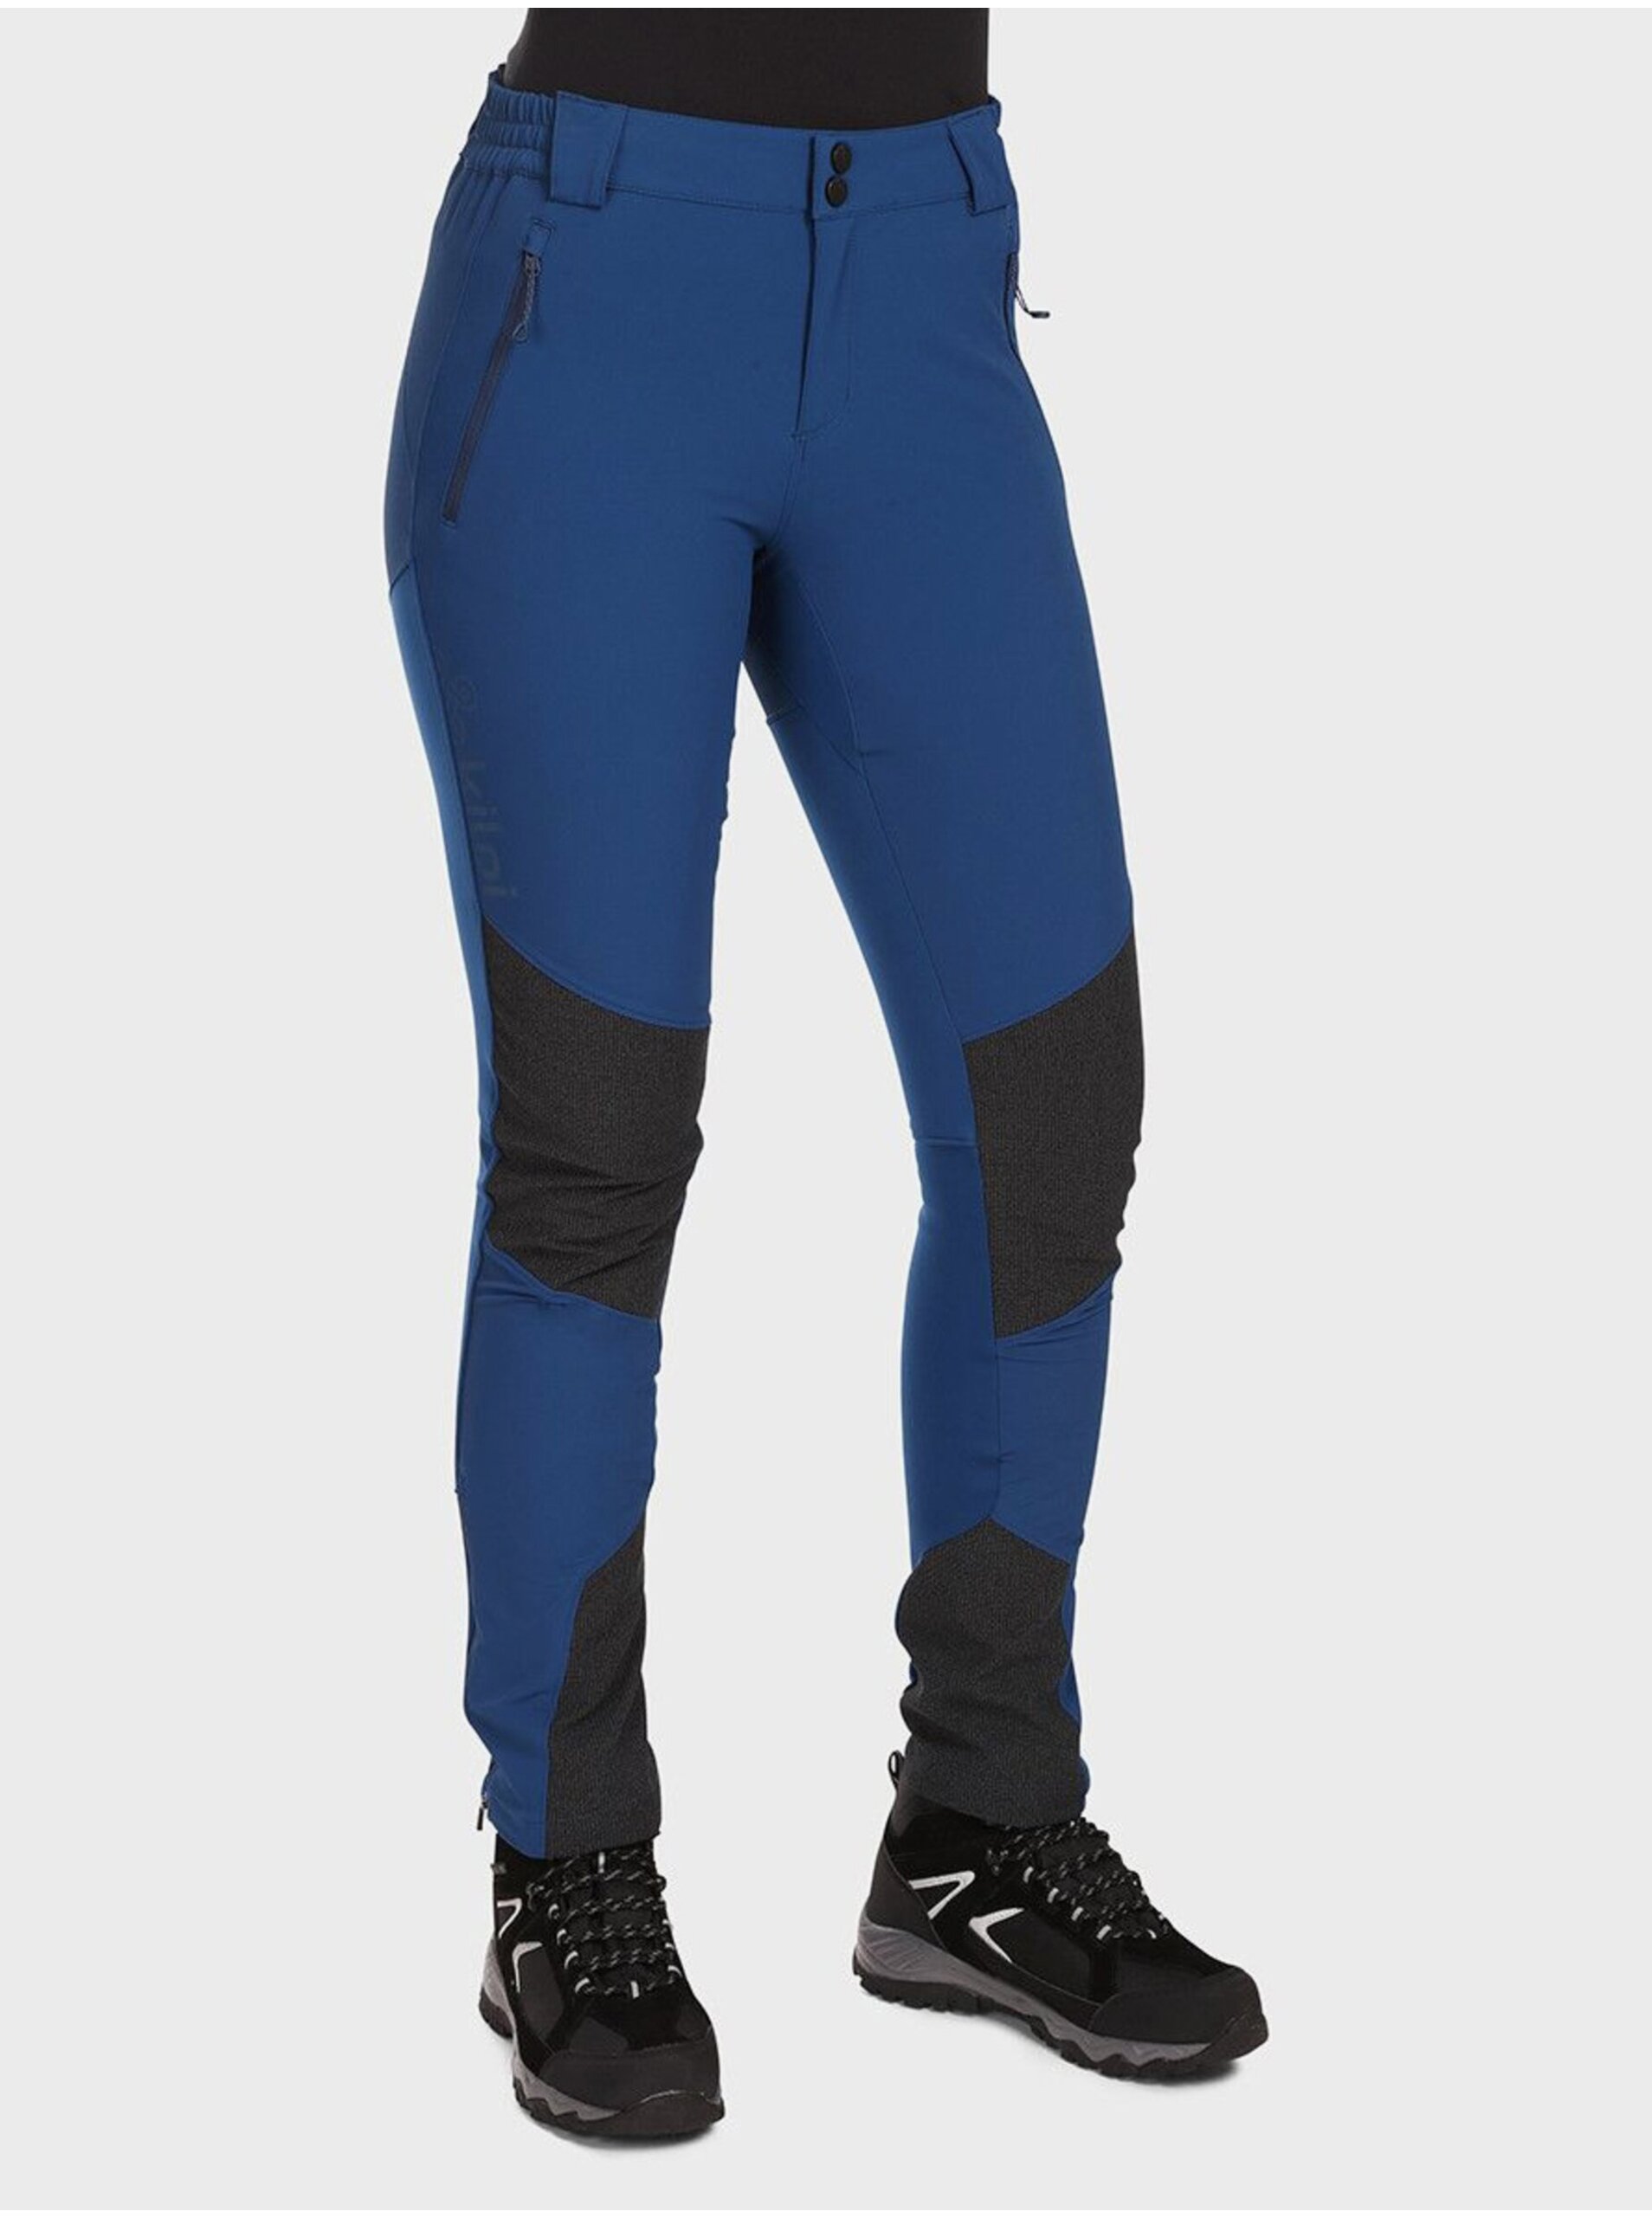 E-shop Tmavě modré dámské outdoorové kalhoty KILPI NUUK